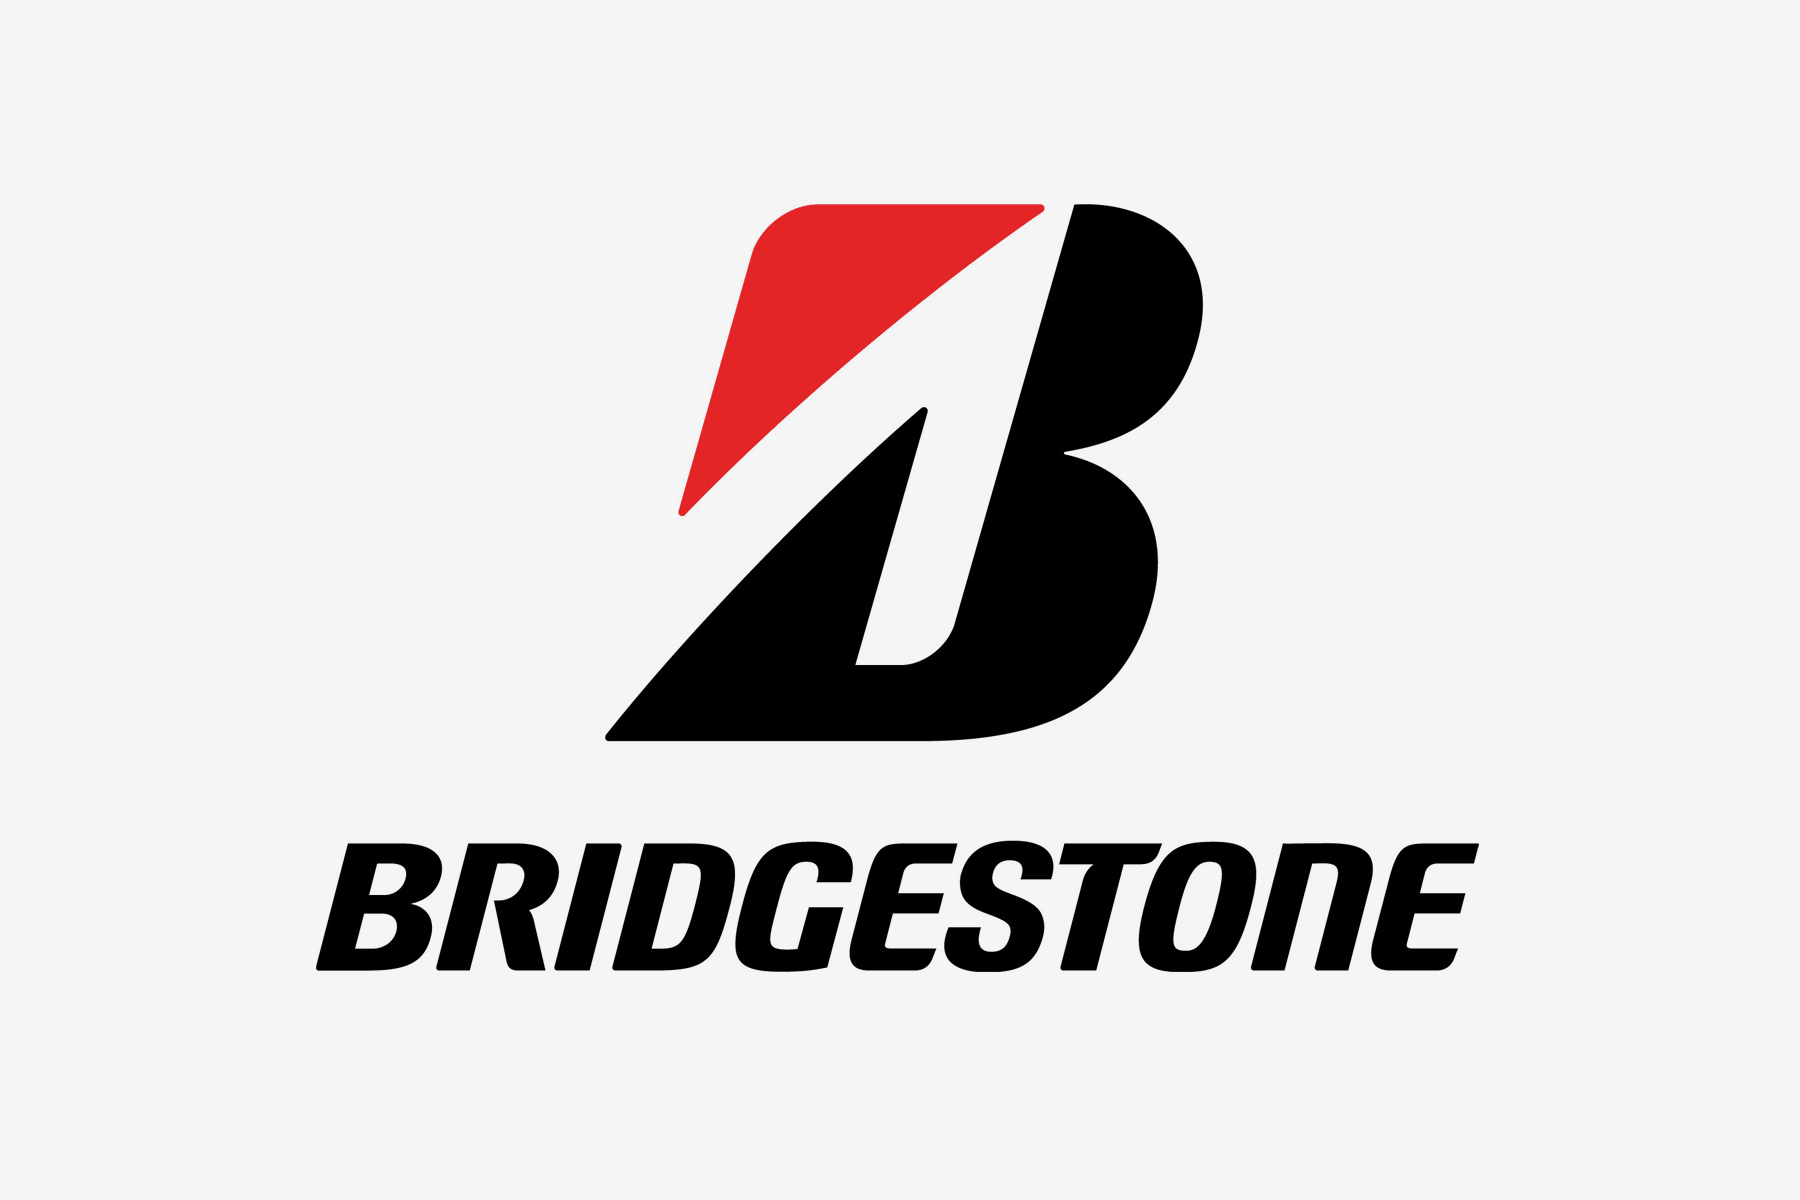 Bridgestone Consumer